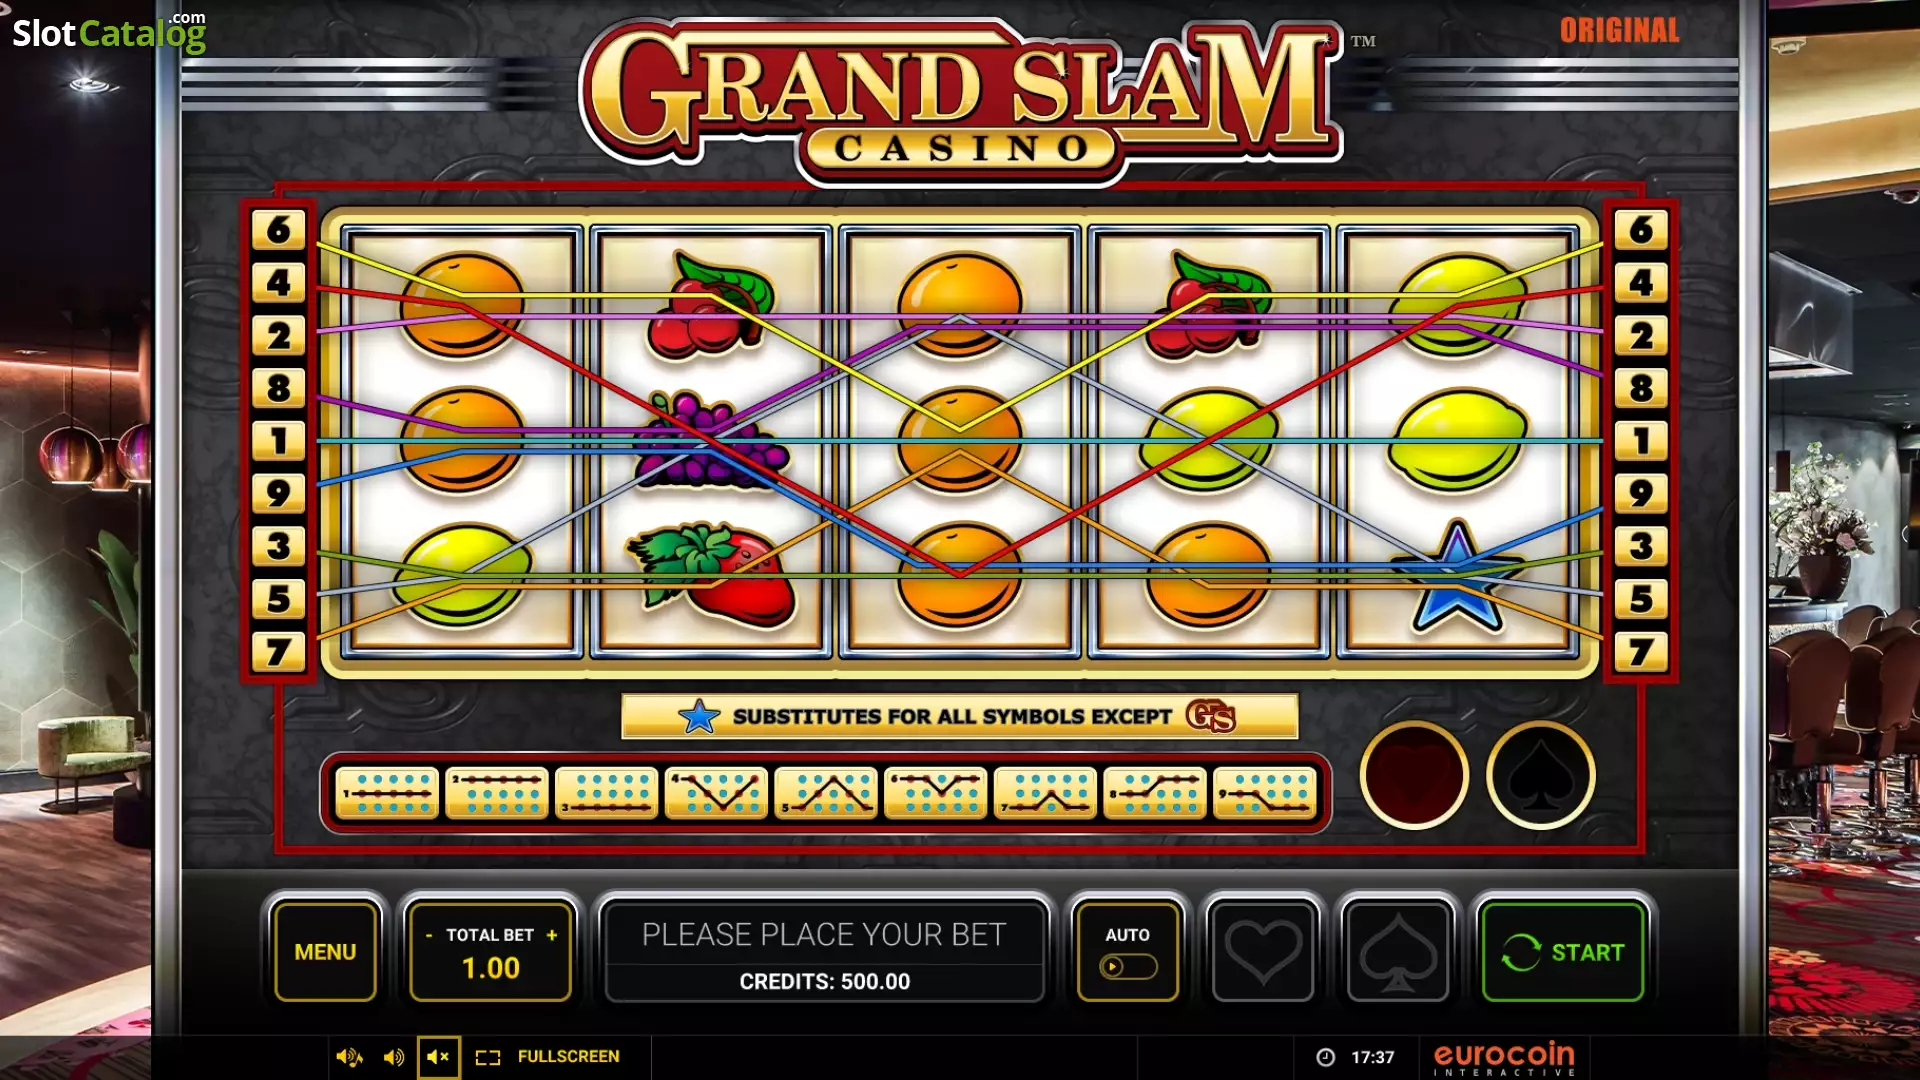 Grand Slam Casino Slot - Free Demo, Review, and Casino Bonus